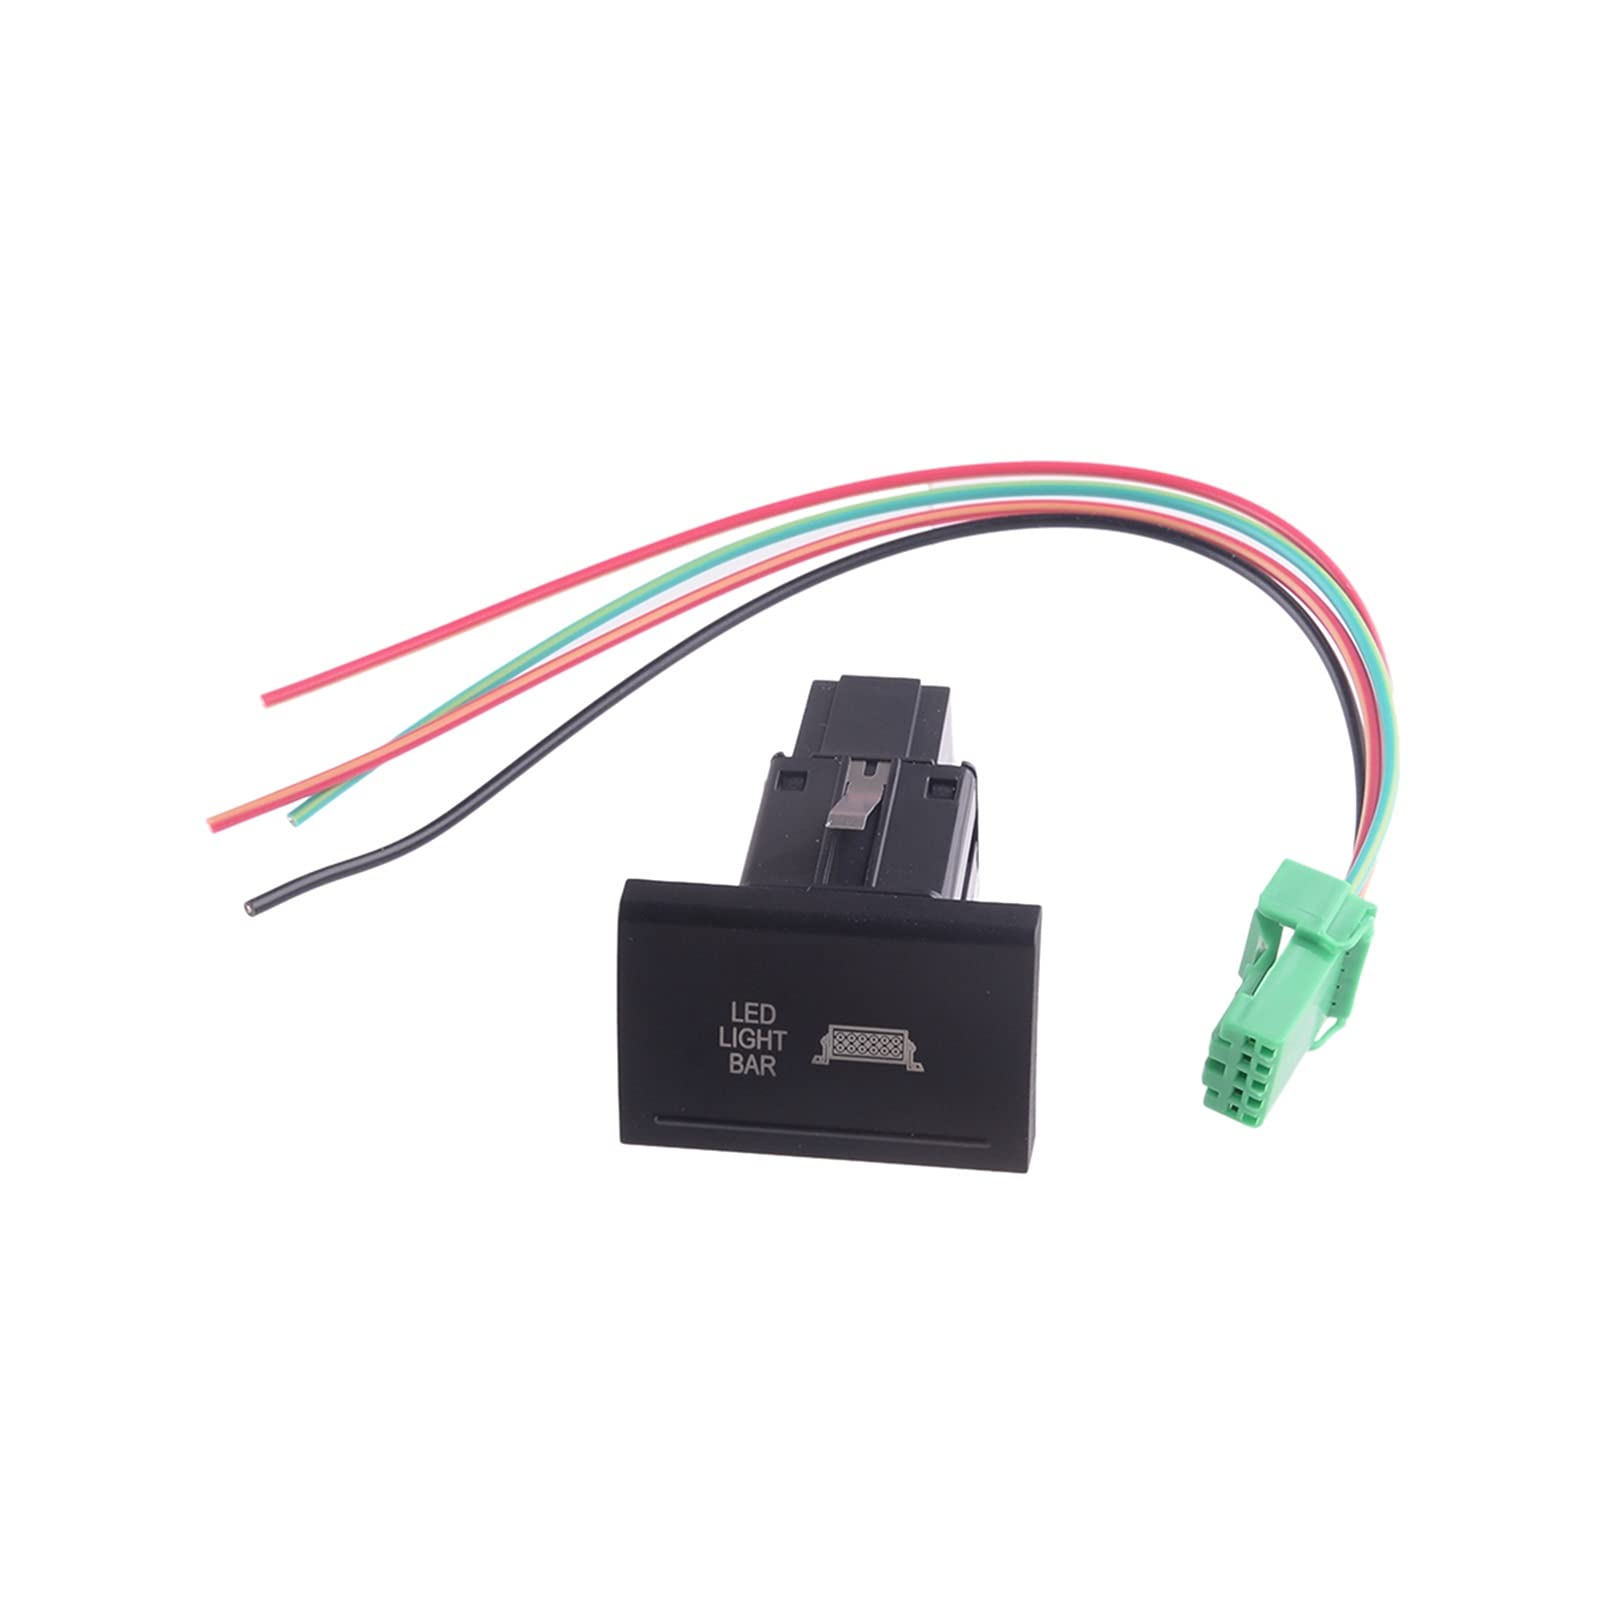 UNNIQ Auto-Druckknopf-Schalter rot LED Arbeit hinterer Fleck Rückseite Nebelscheinwerferleiste 12V fit for Vw. Fit for Amarok. Kfz-Schalter und -Relais von UNNIQ